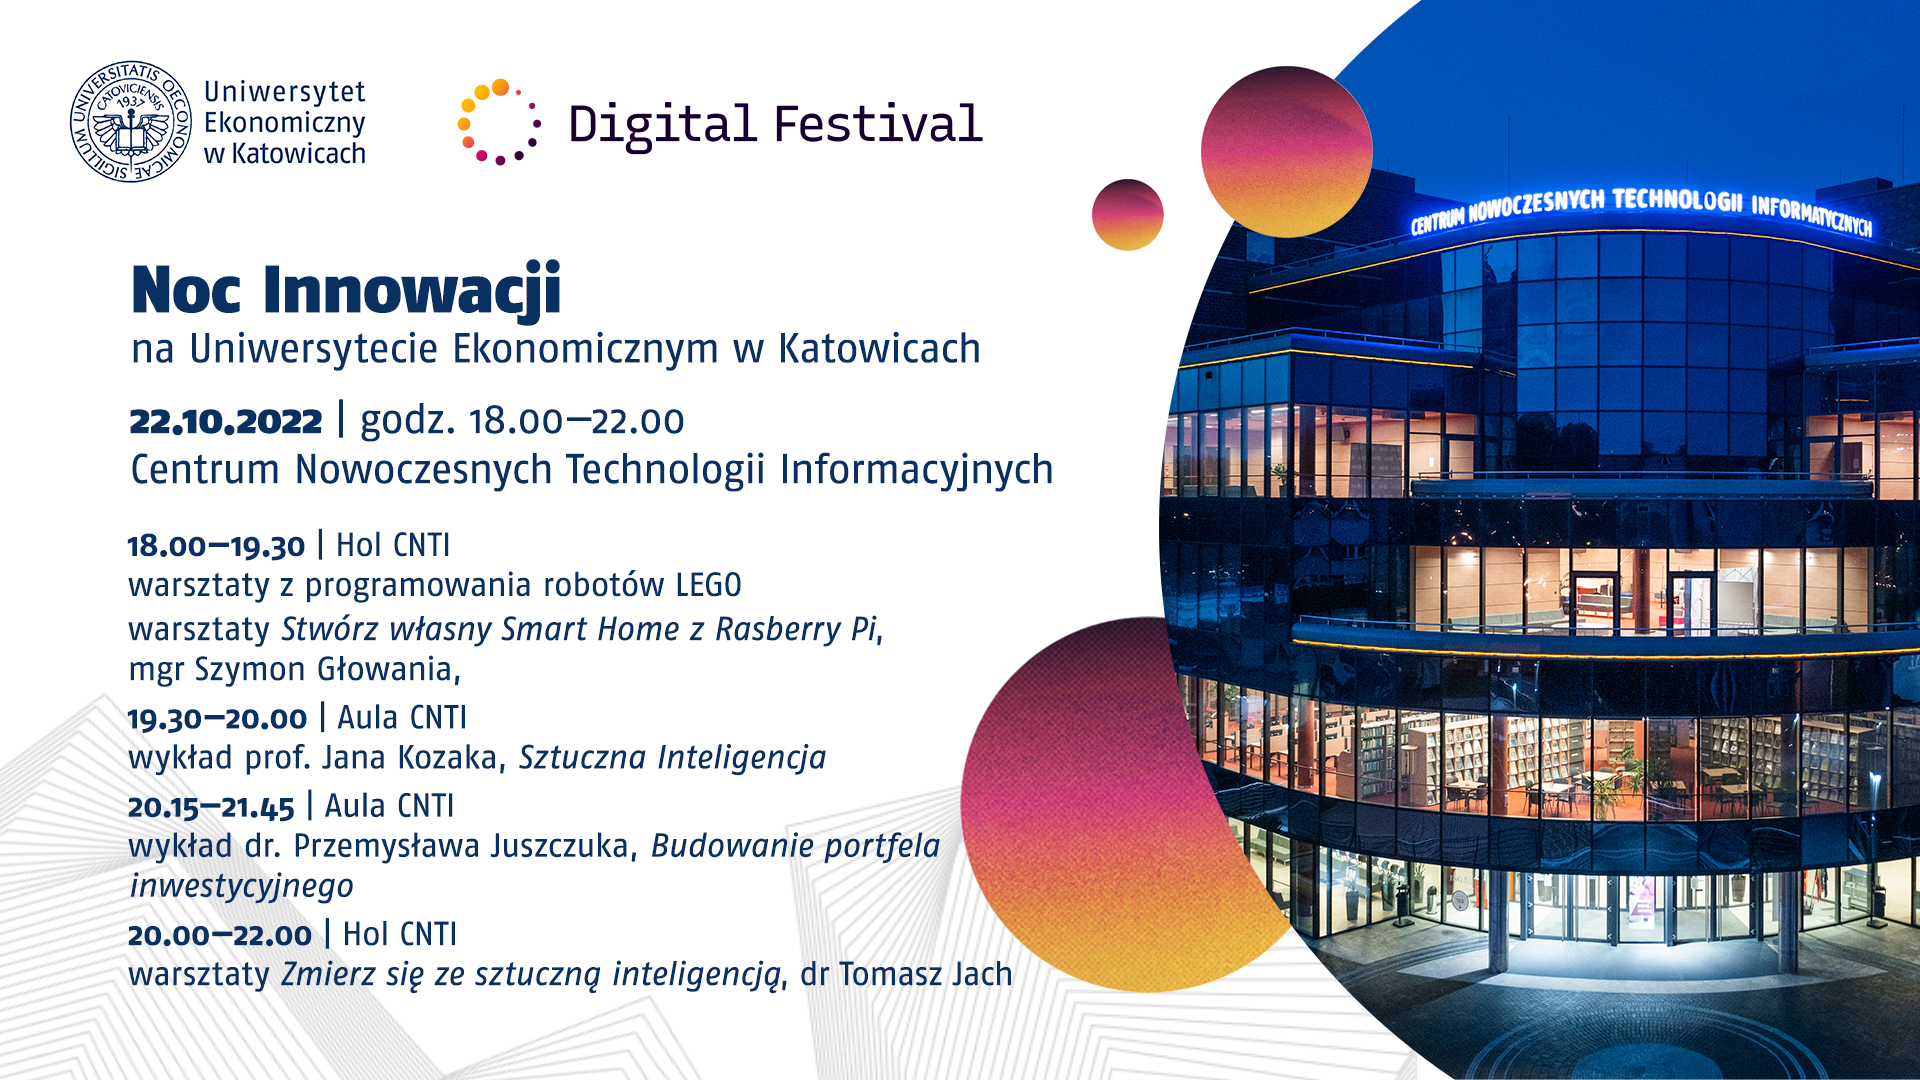 Noc Innowacji na Uniwersytecie Ekonomicznym w Katowicach